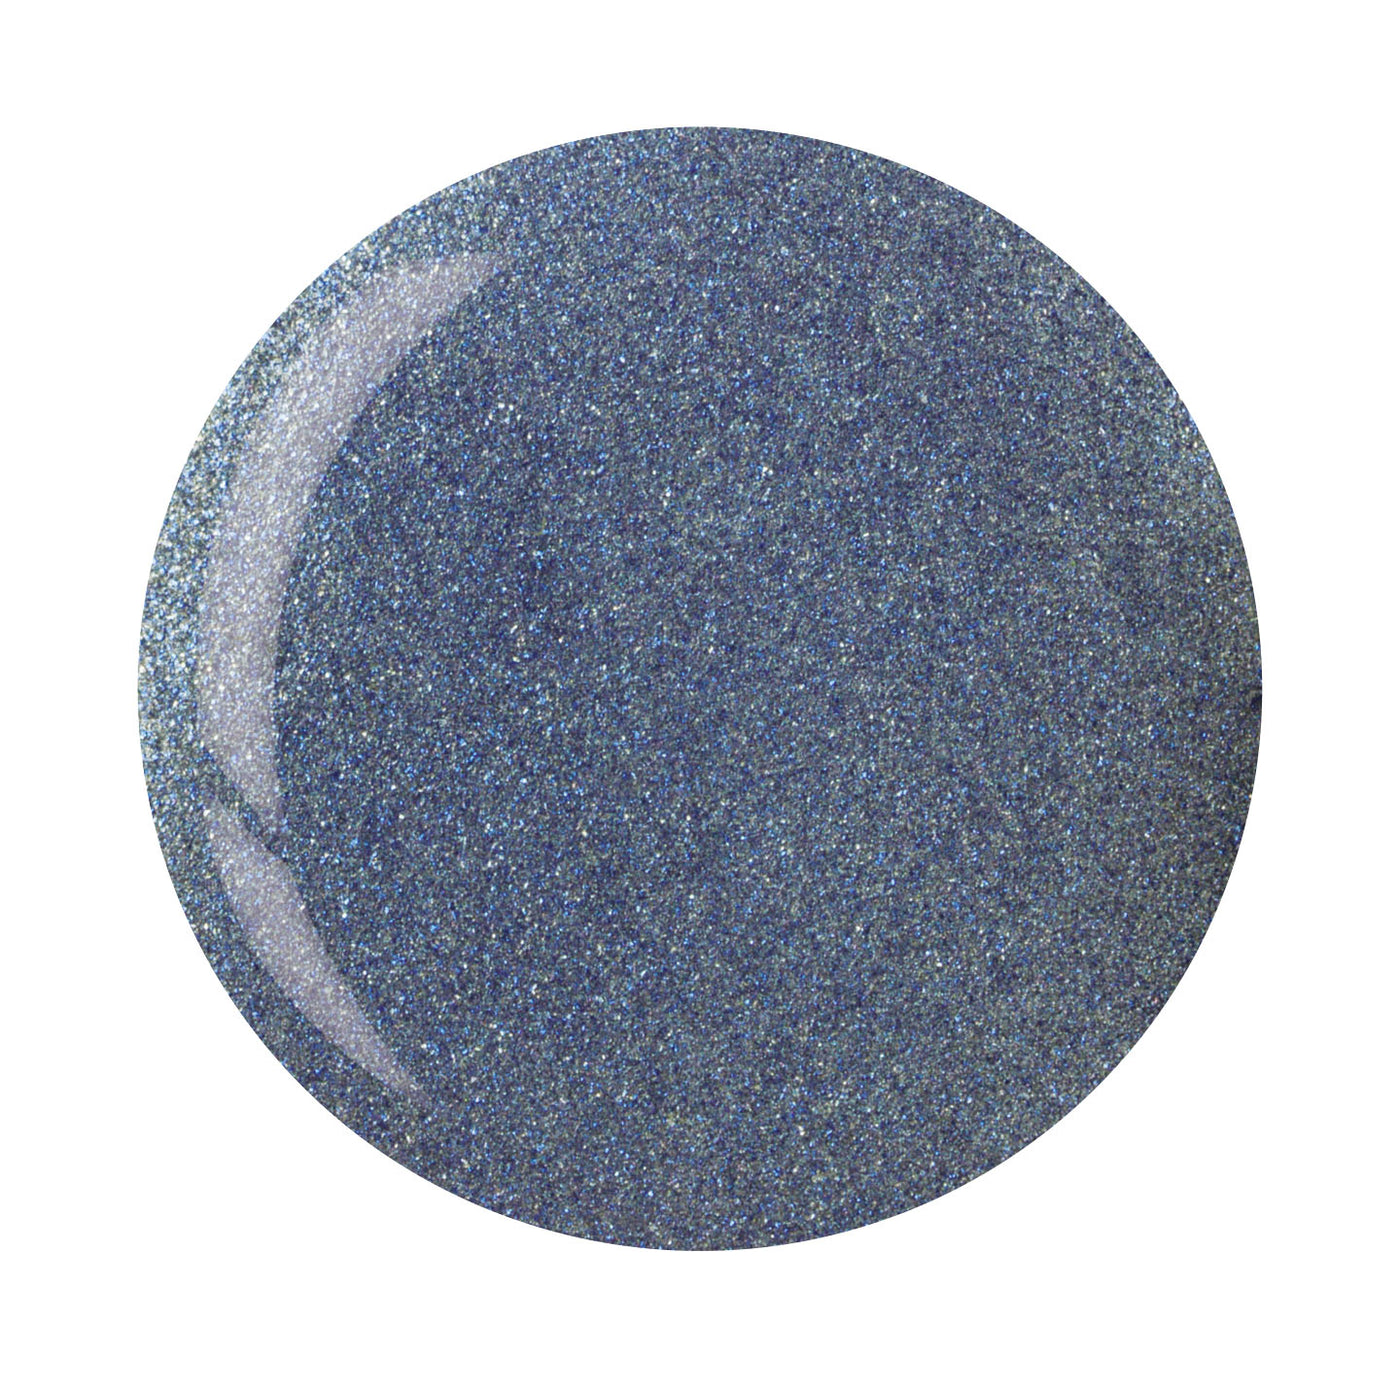 CP Dipping Powder14g - 5602-5 Blue W/ Blue Mica